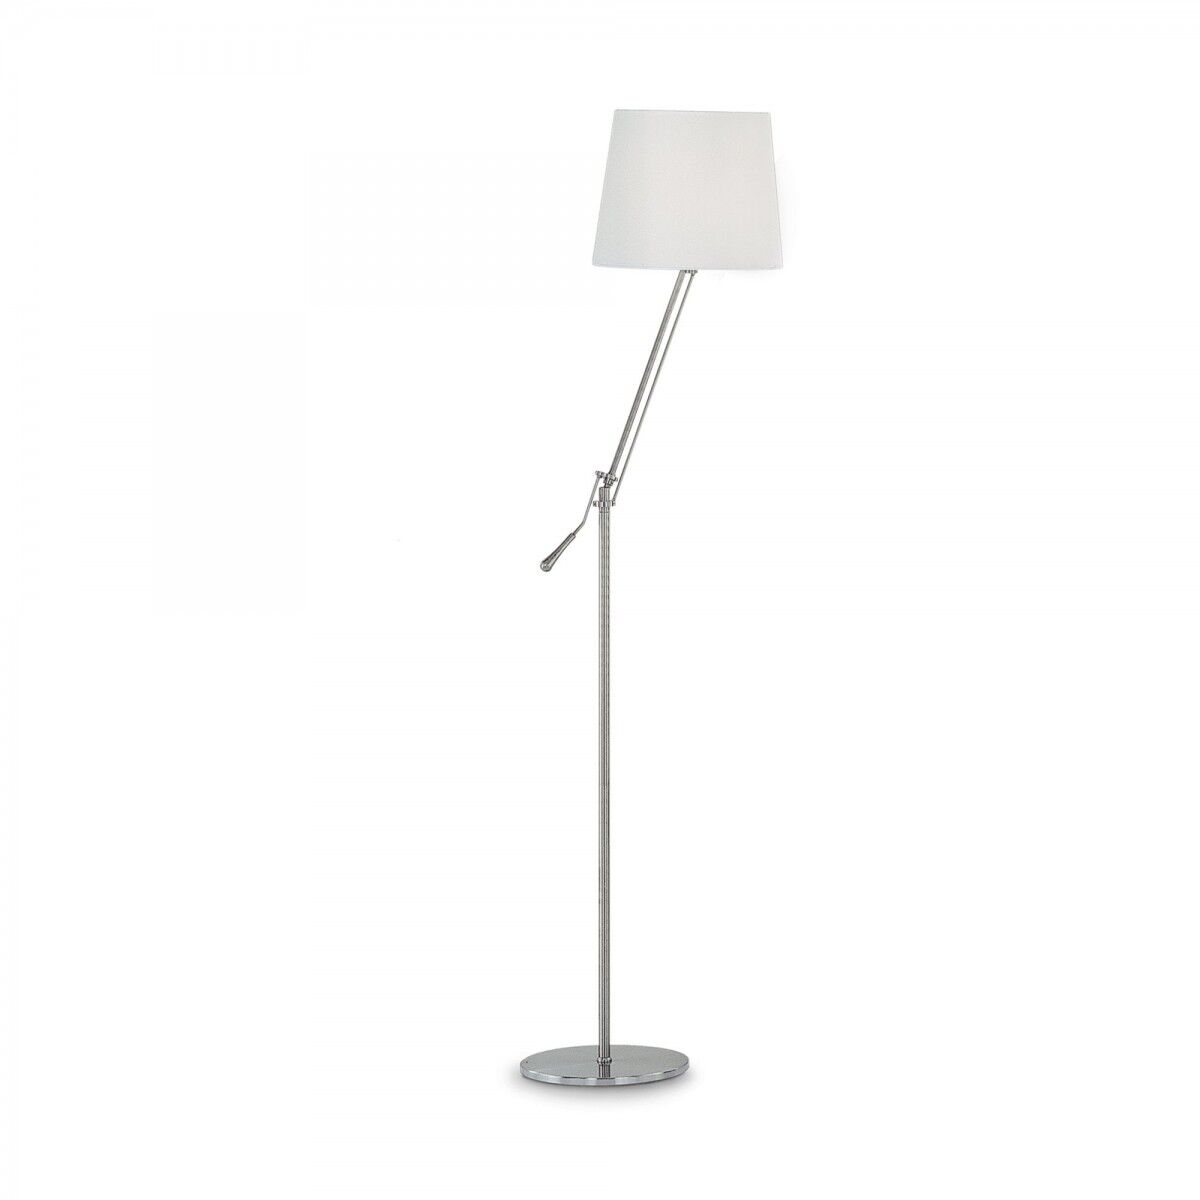 Ideal lux stojaca lampa Ideal lux regola 014609 - biela